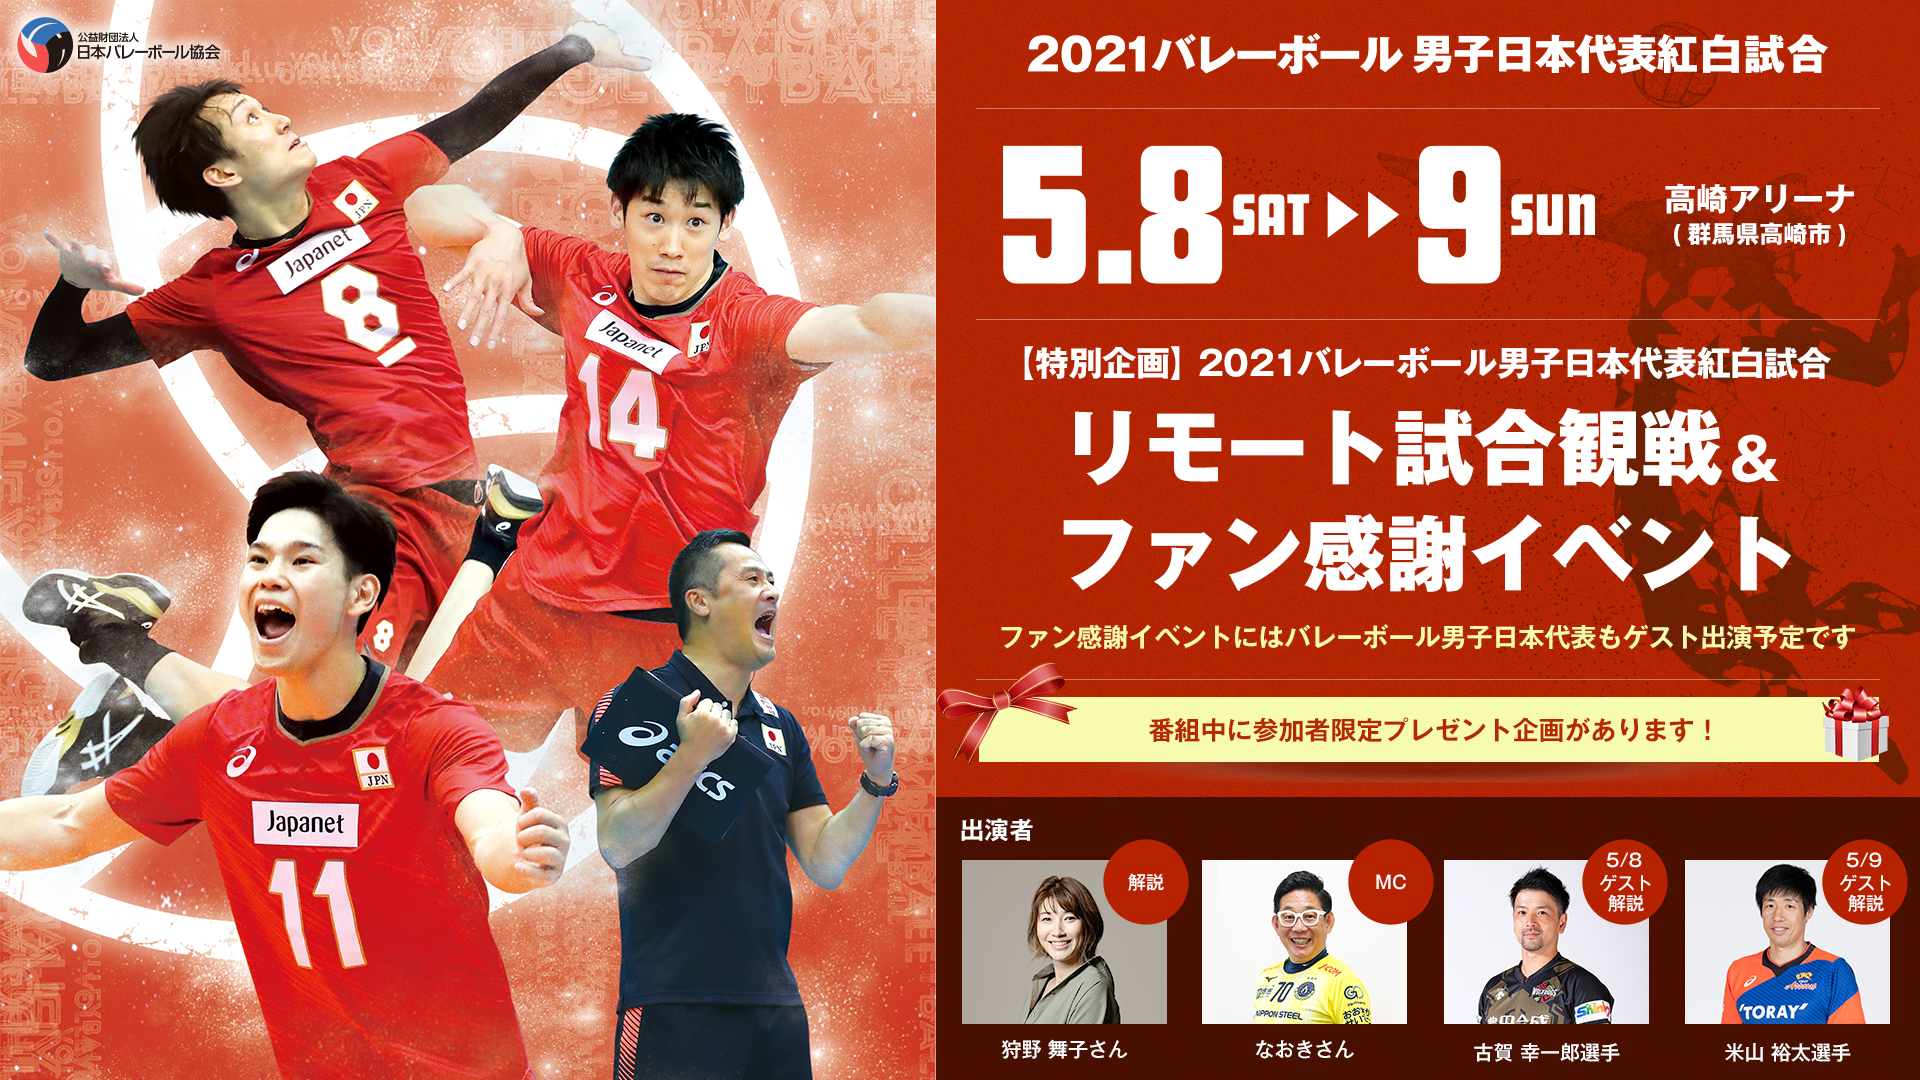 出場メンバー18名が決定。『2021バレーボール男子日本代表紅白試合』では試合とファン感謝イベントのライブ配信が行われる